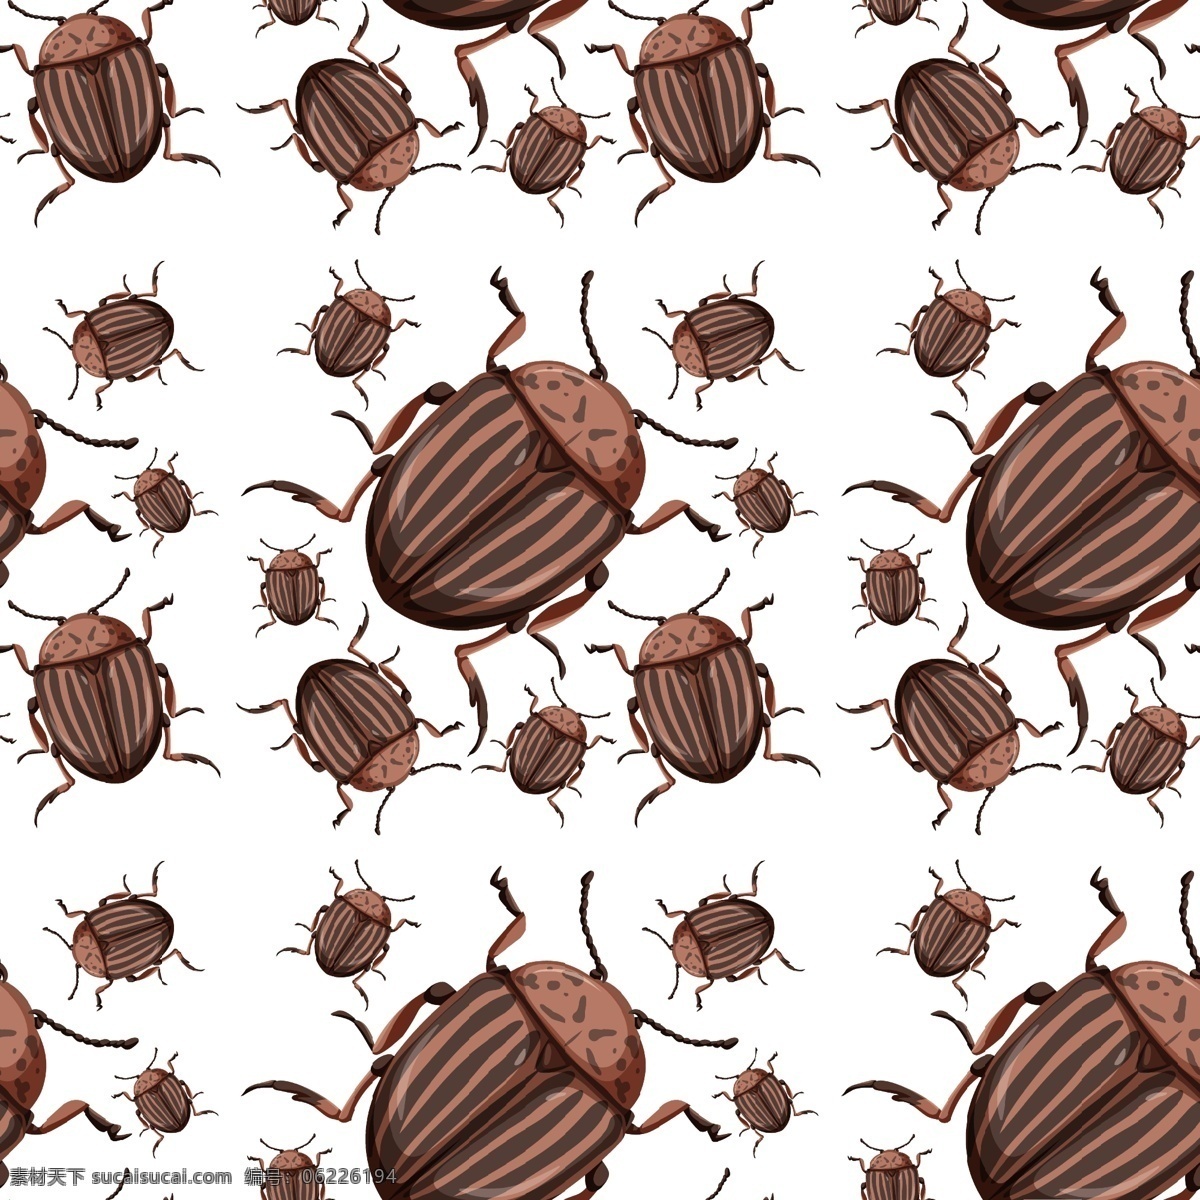 卡通昆虫图片 卡通昆虫 生命周期 进化 退化 演变 虫子 发展 生物 学科 卡通动物生物 生物世界 昆虫